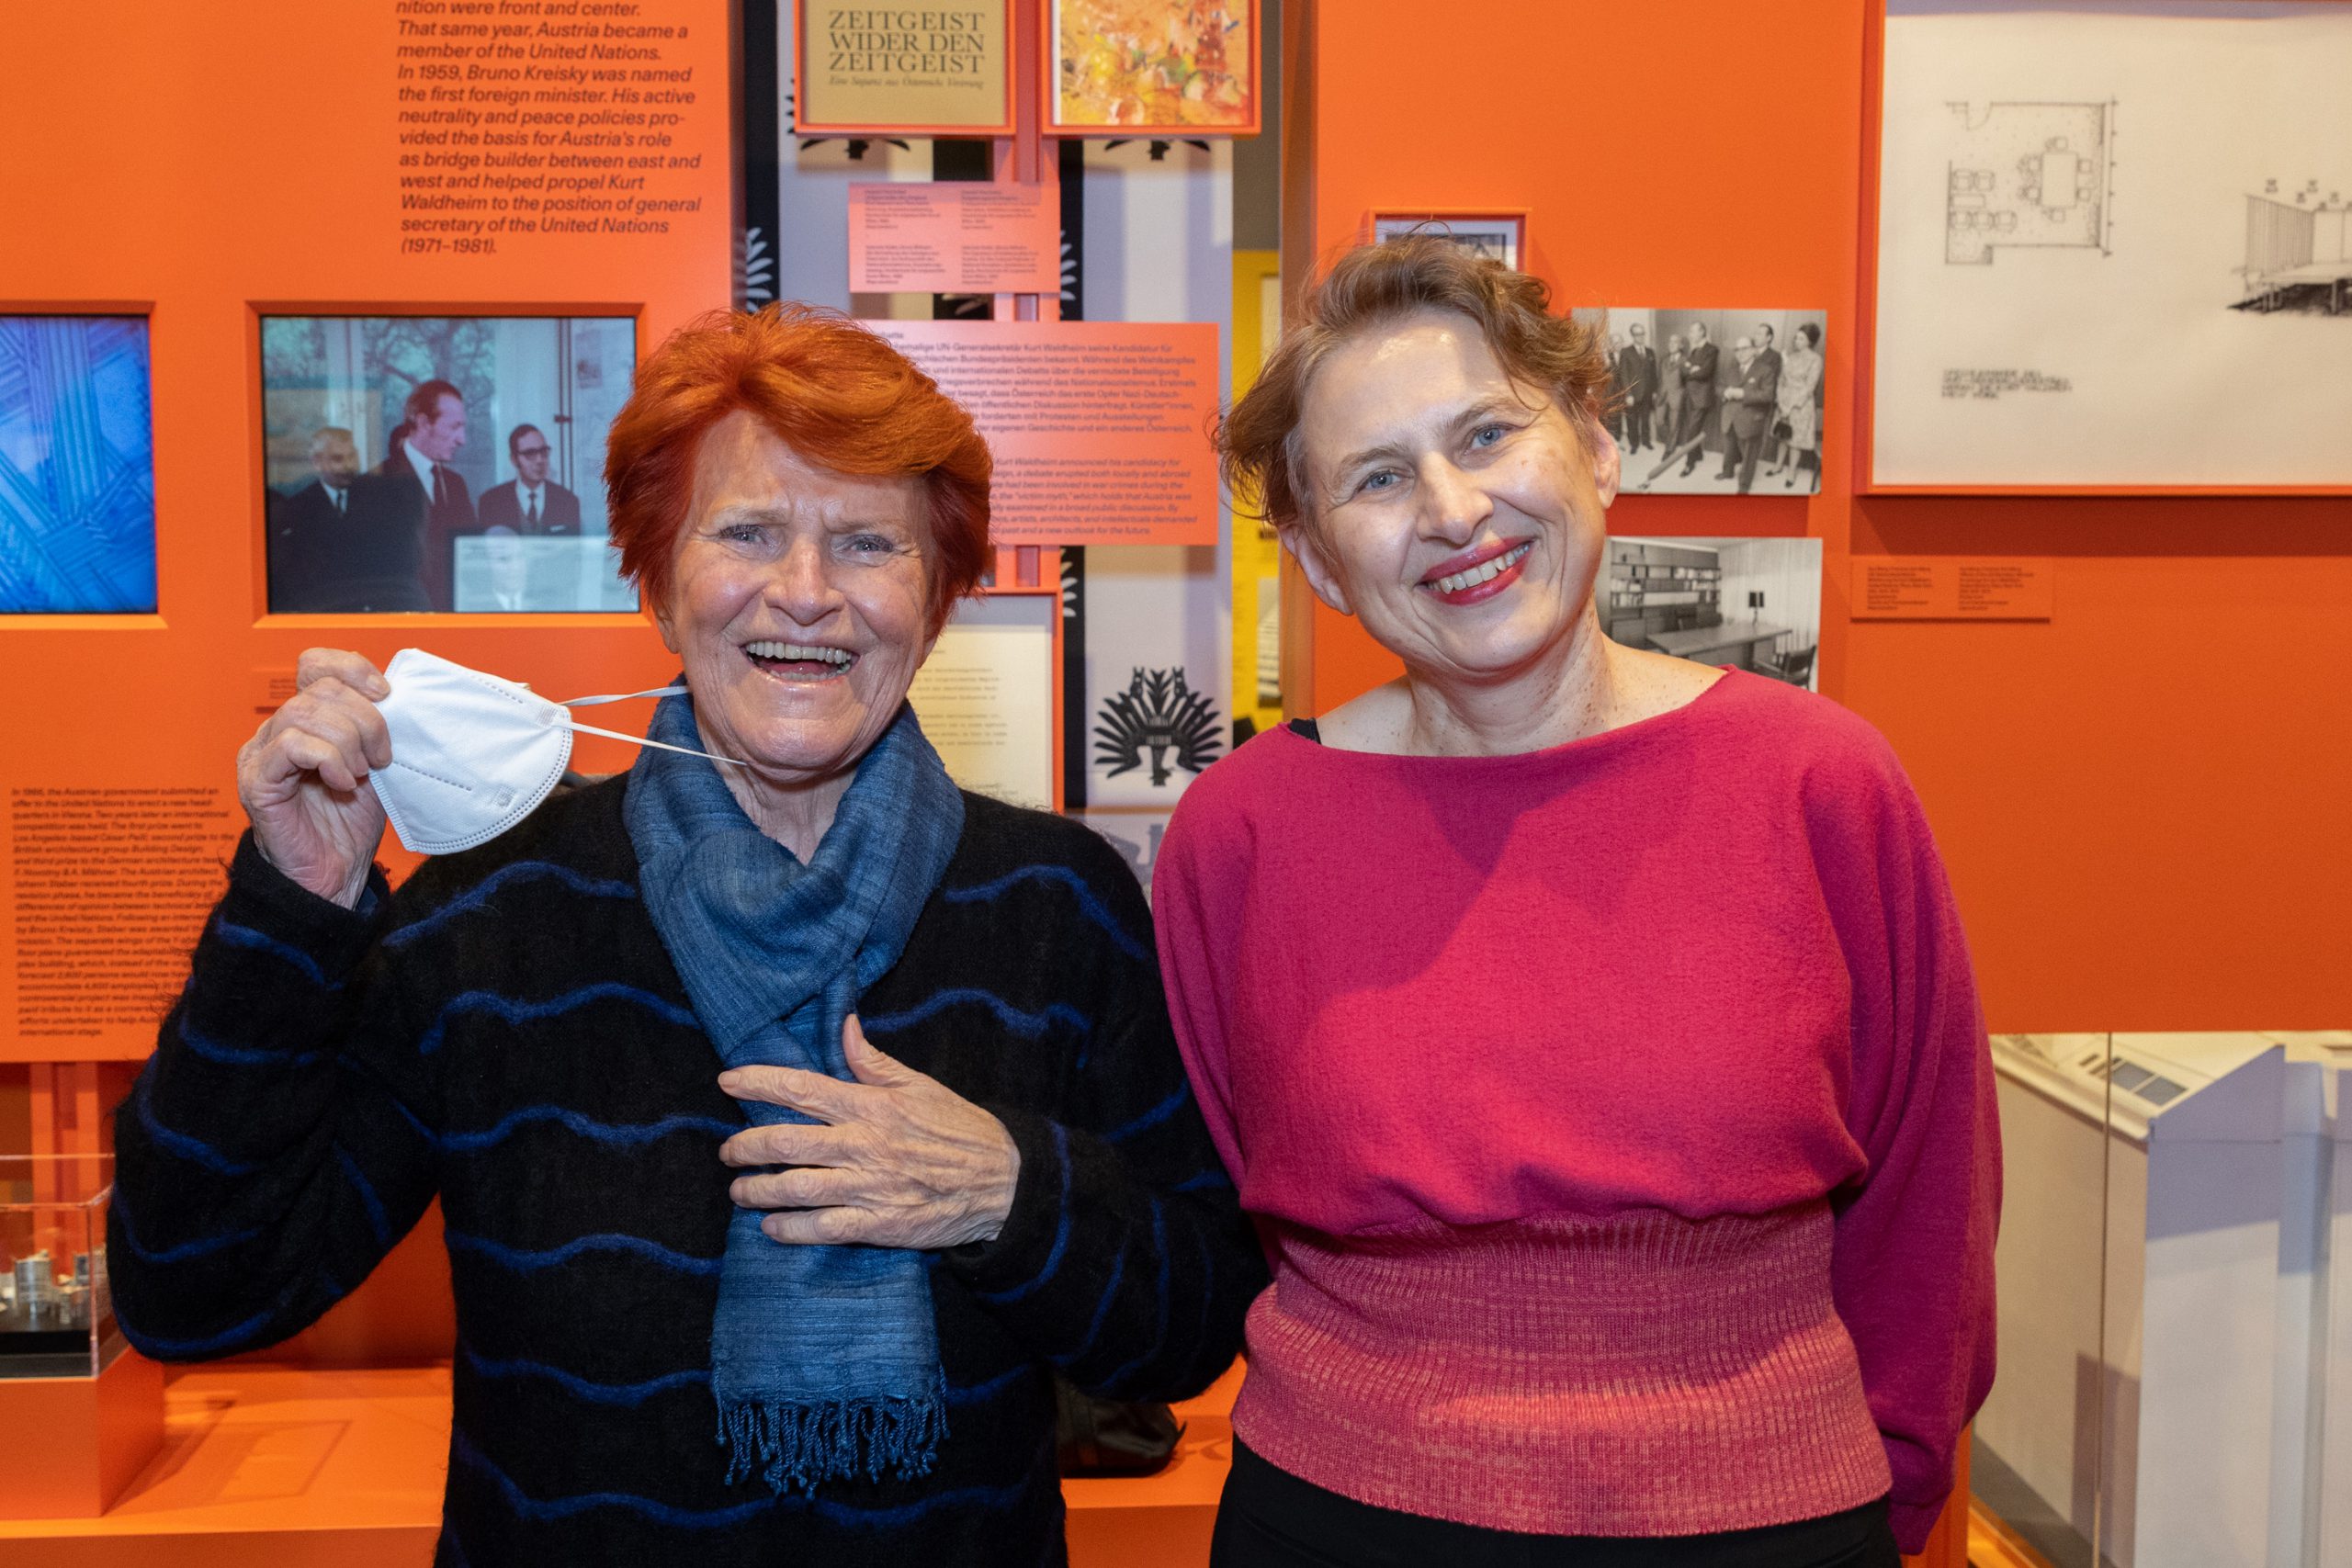 2 lachende Frauen, eine davon mit einer Maske, die andere mit pinken Pulli vor oranger Ausstellungswand